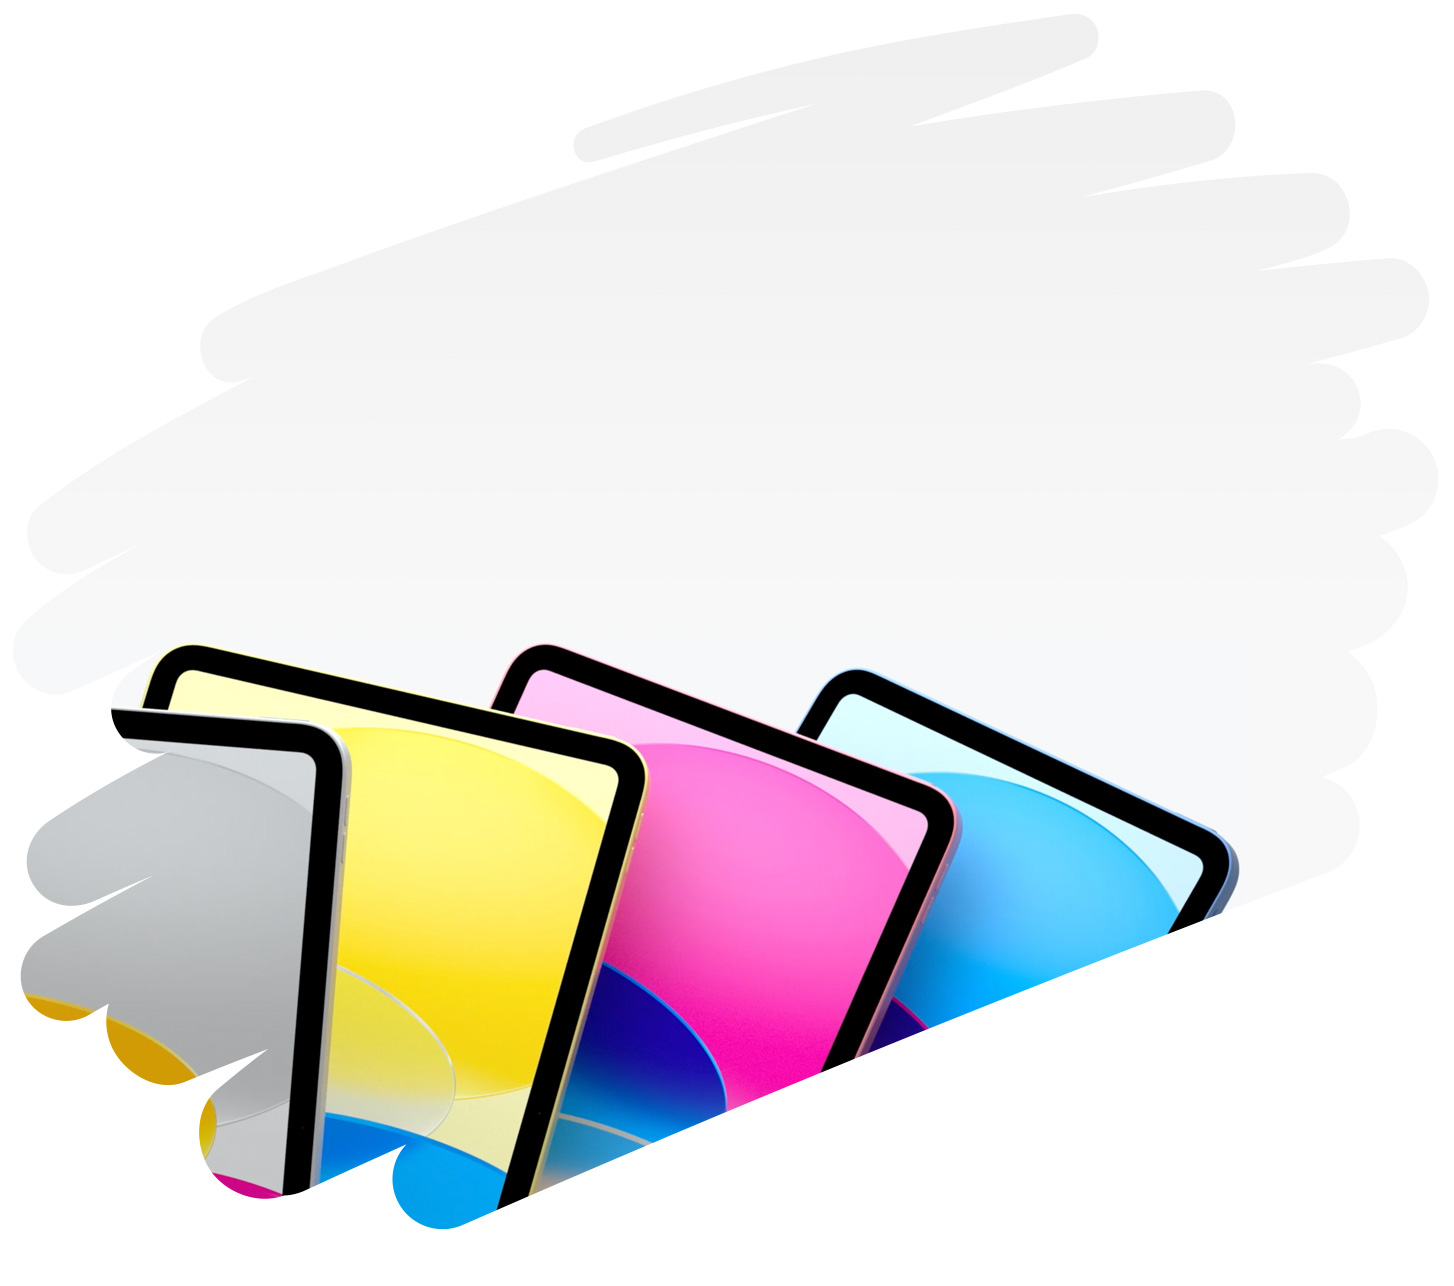 موديلات iPad بألوانها الزاهية تظهر داخل خط عريض مرسوم بالقلم على الصفحة.